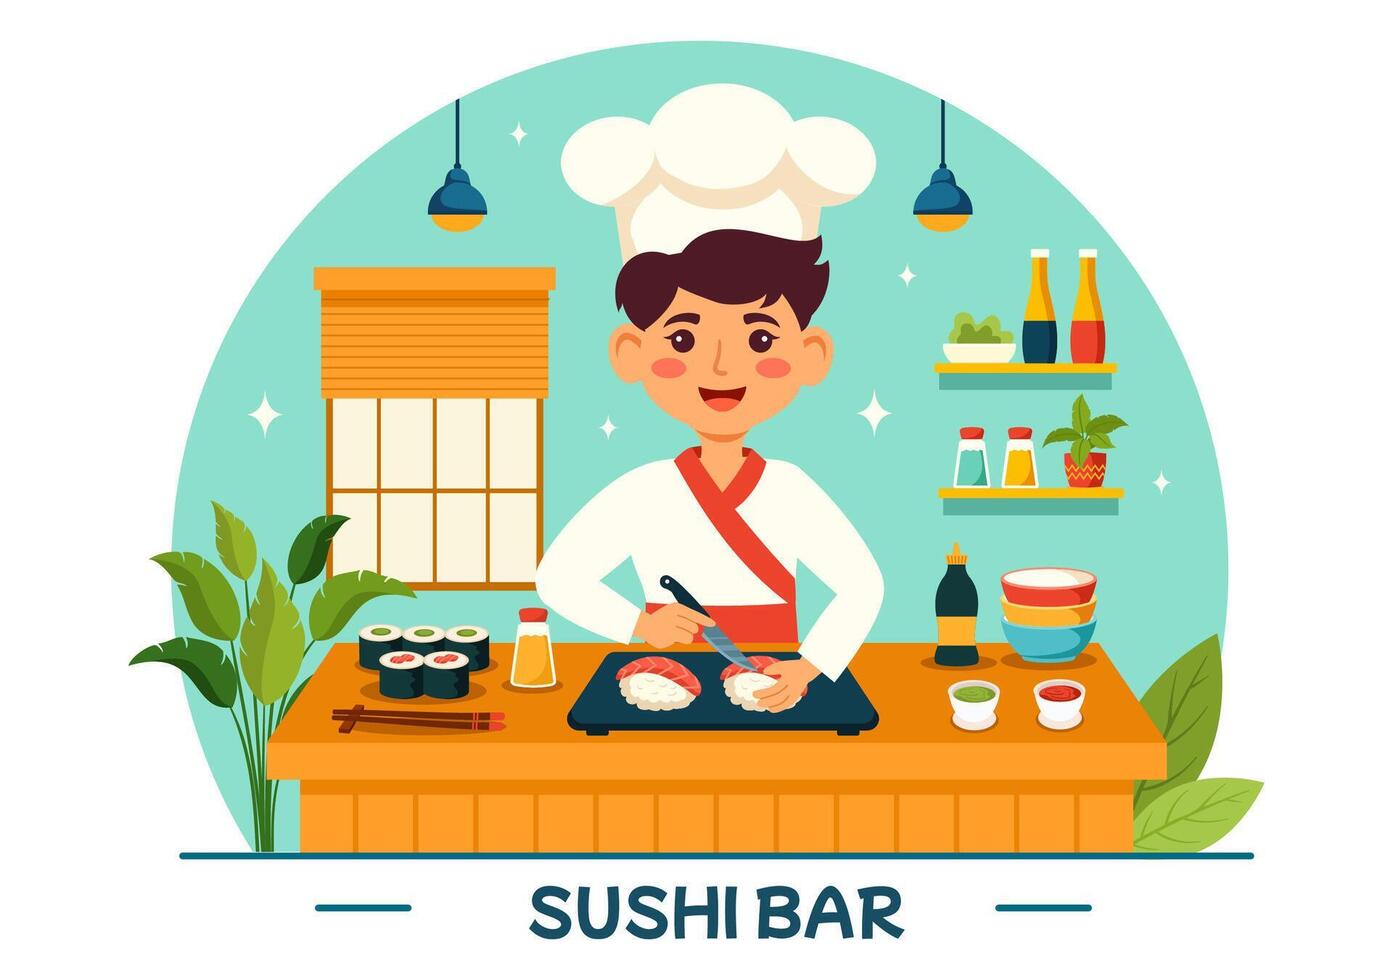 Sushi bar vettore illustrazione di Giappone asiatico cibo o ristorante di sashimi e riso per mangiare con soia salsa e wasabi nel piatto cartone animato sfondo